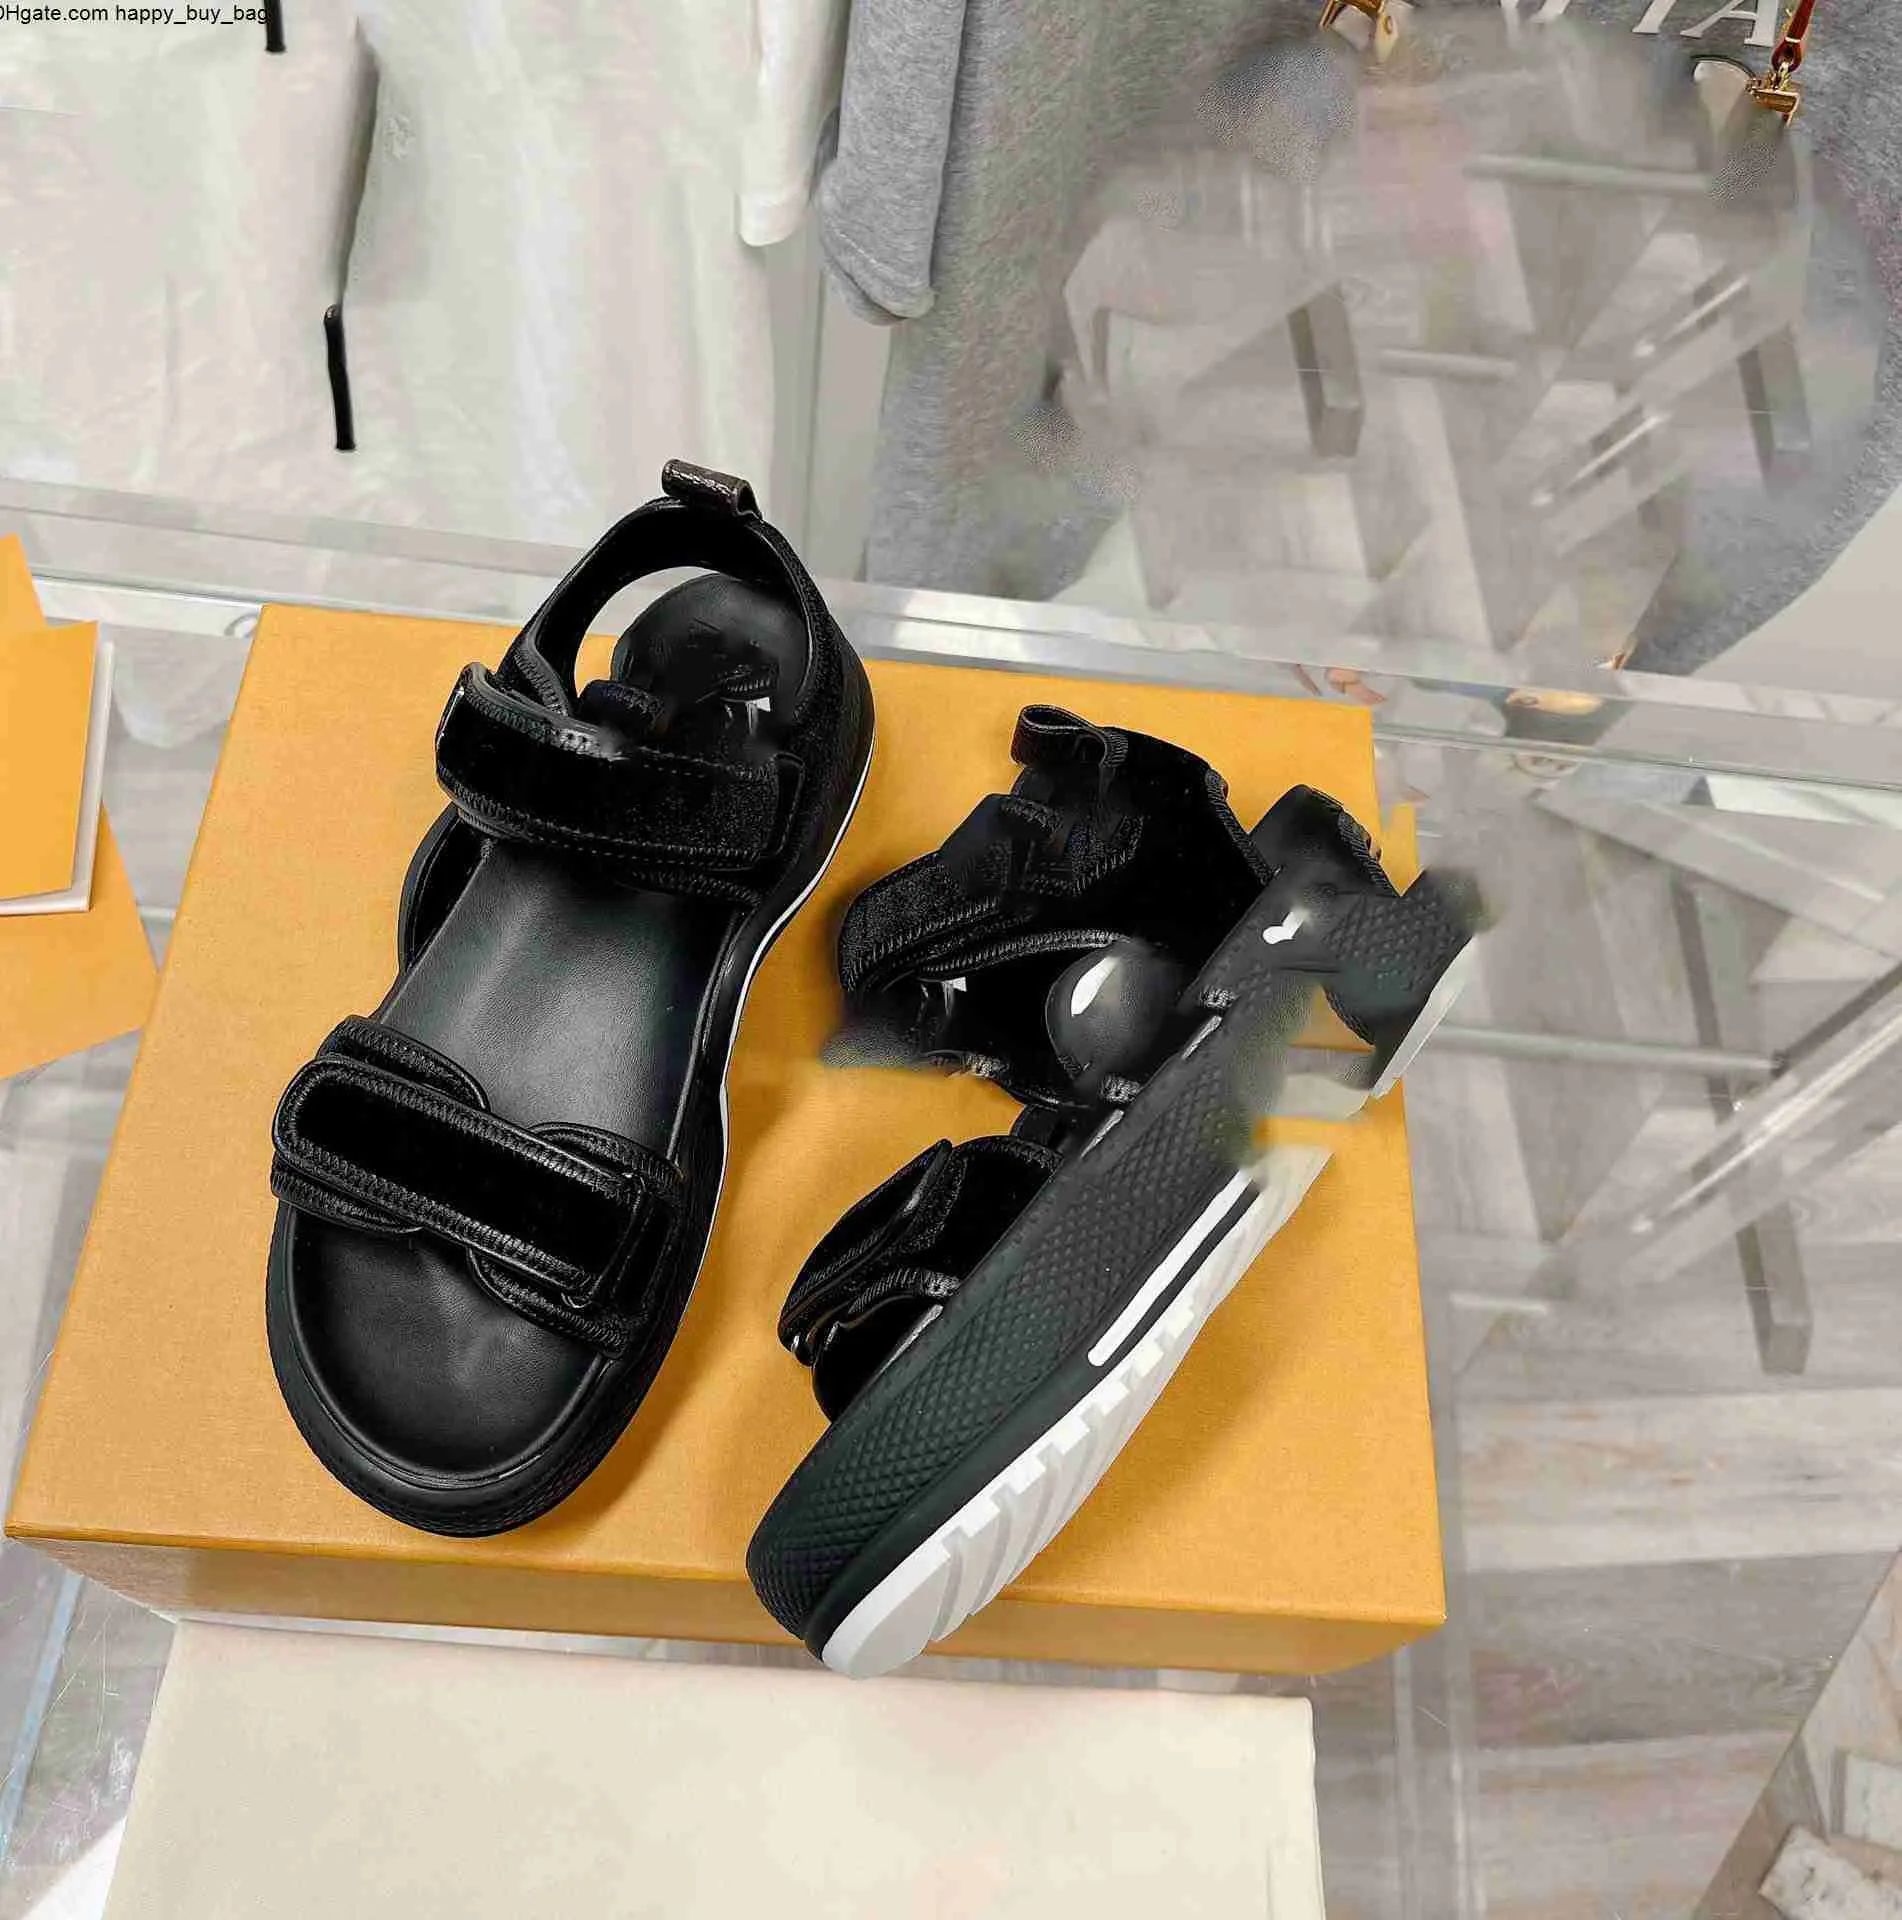 Créateur de mode de luxe pour hommes et femmes sandales pantoufles en cuir imprimé boutons en métal avec boîte 35-45 adfs dQWDXASsasccsdfqwedqwdqsx